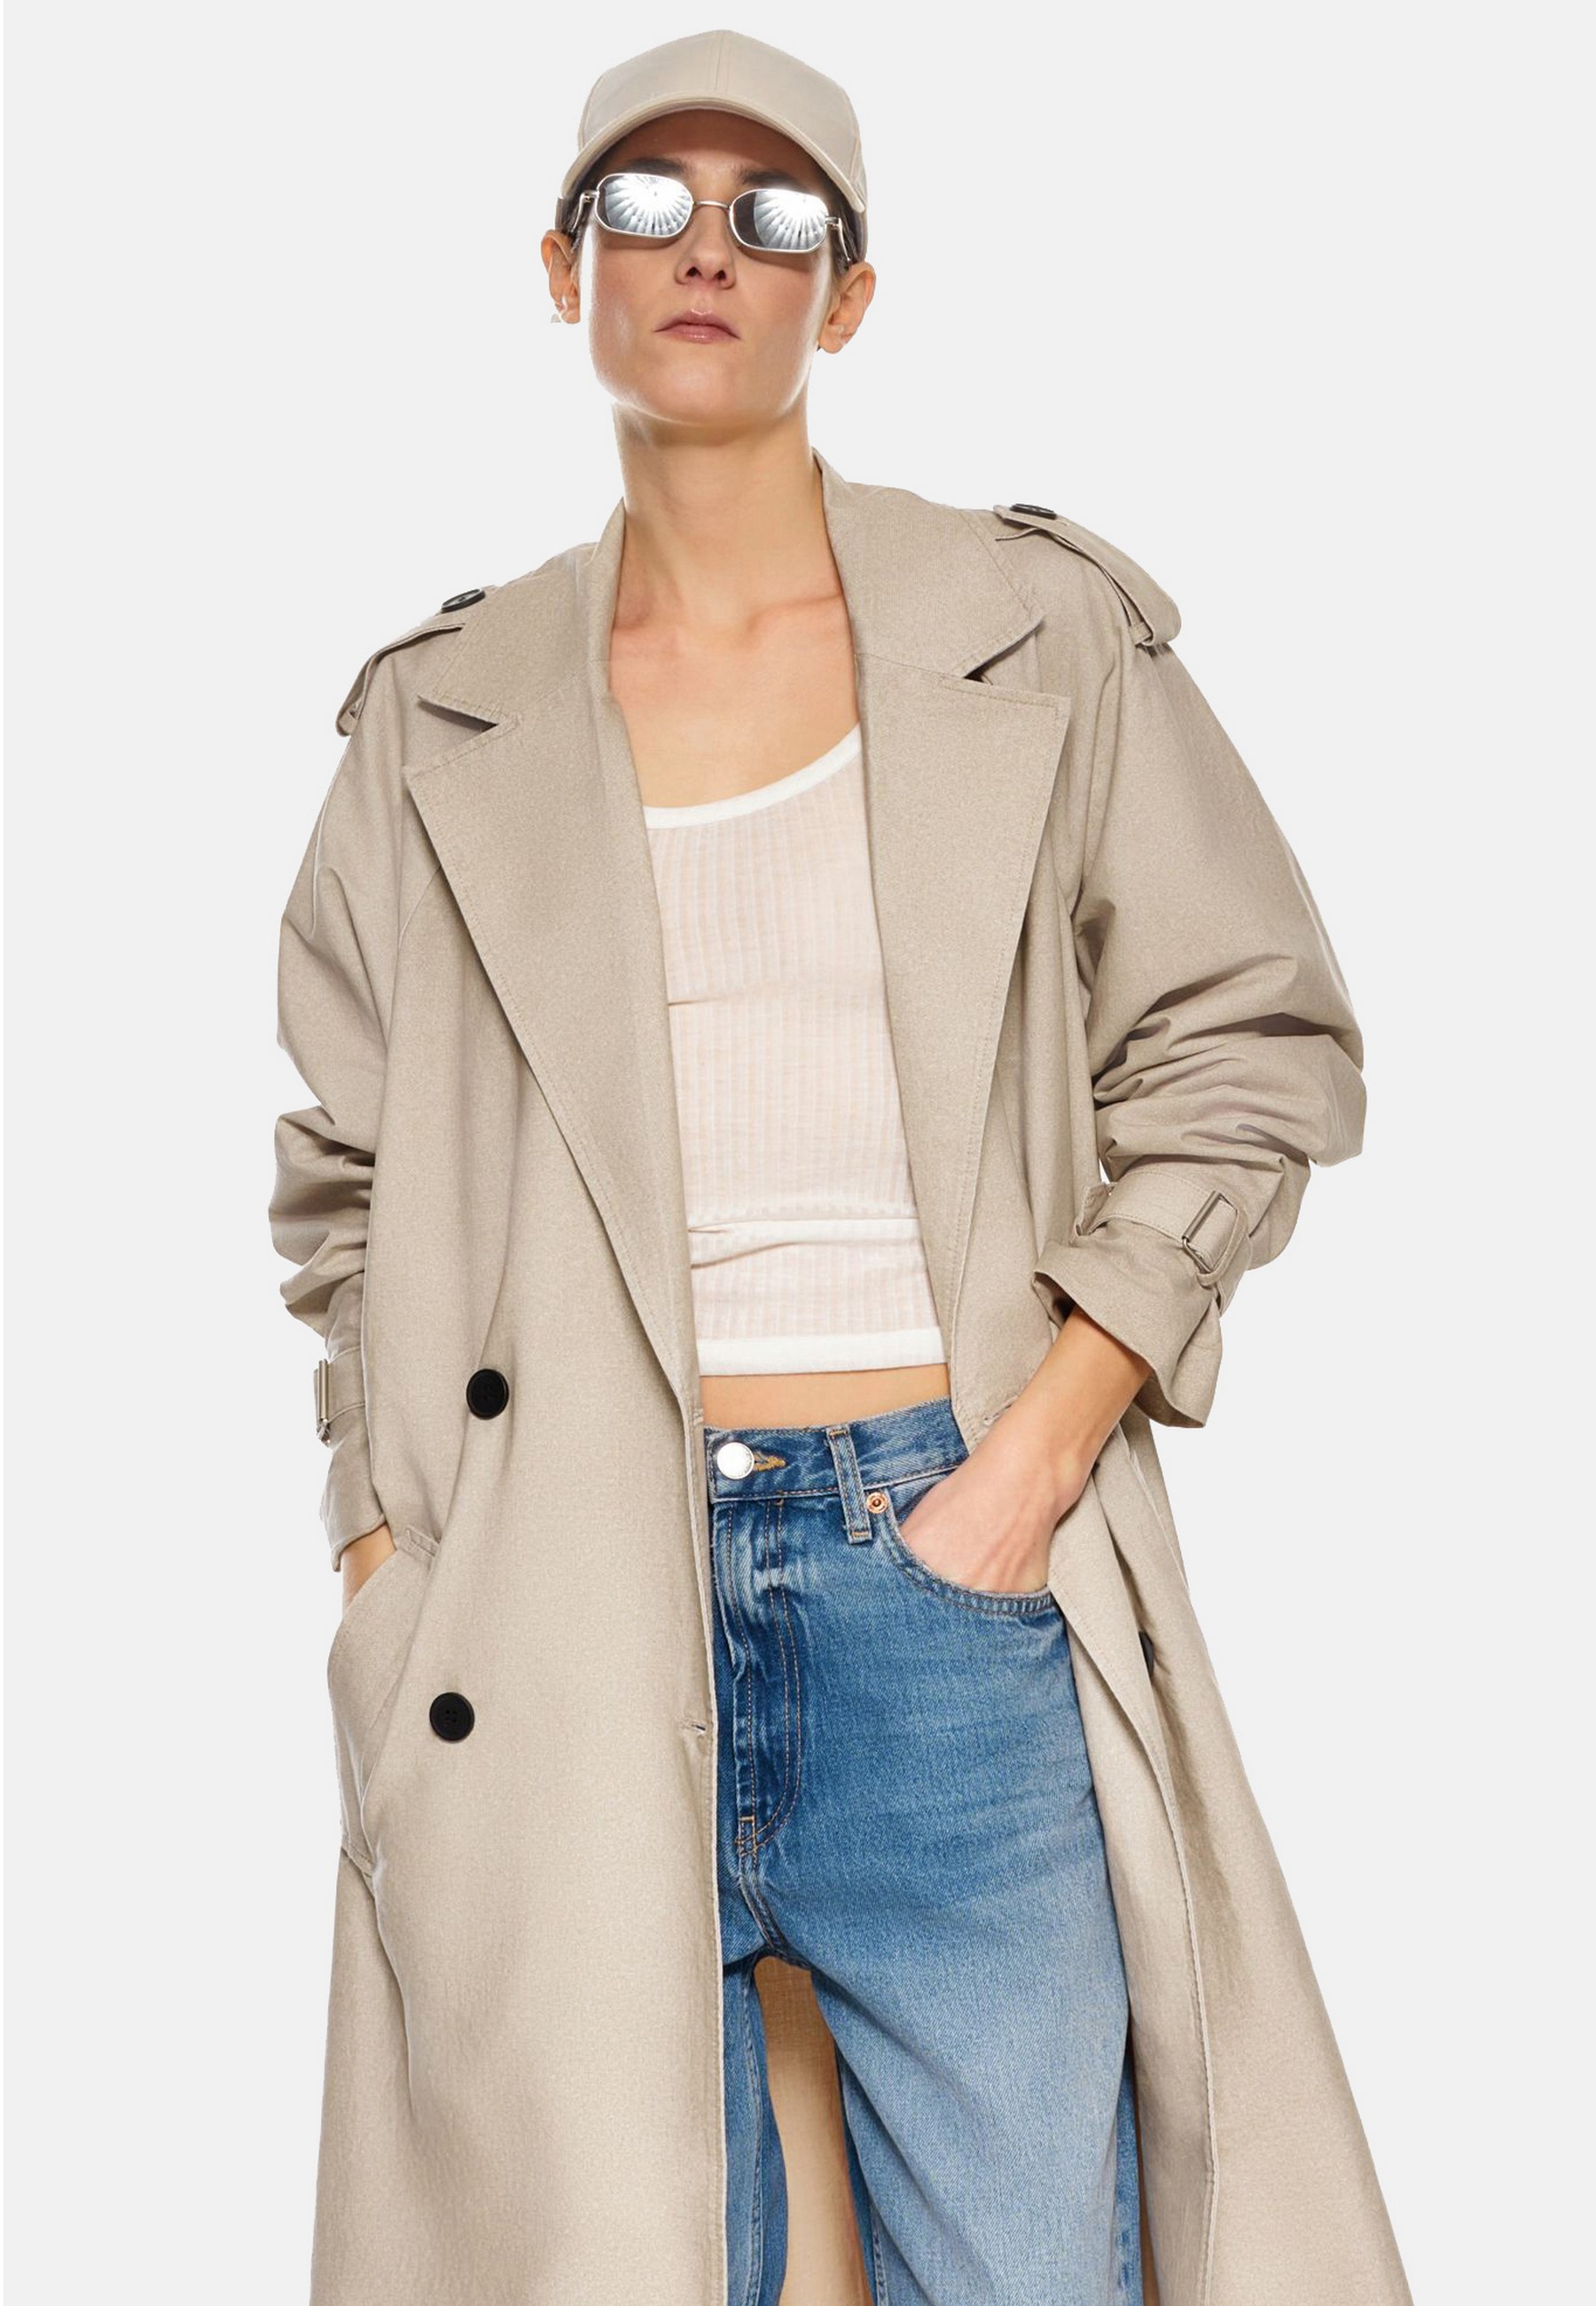 Damen Textil Mantel Clarissa in Beige von Ricano - Frontansicht am Model